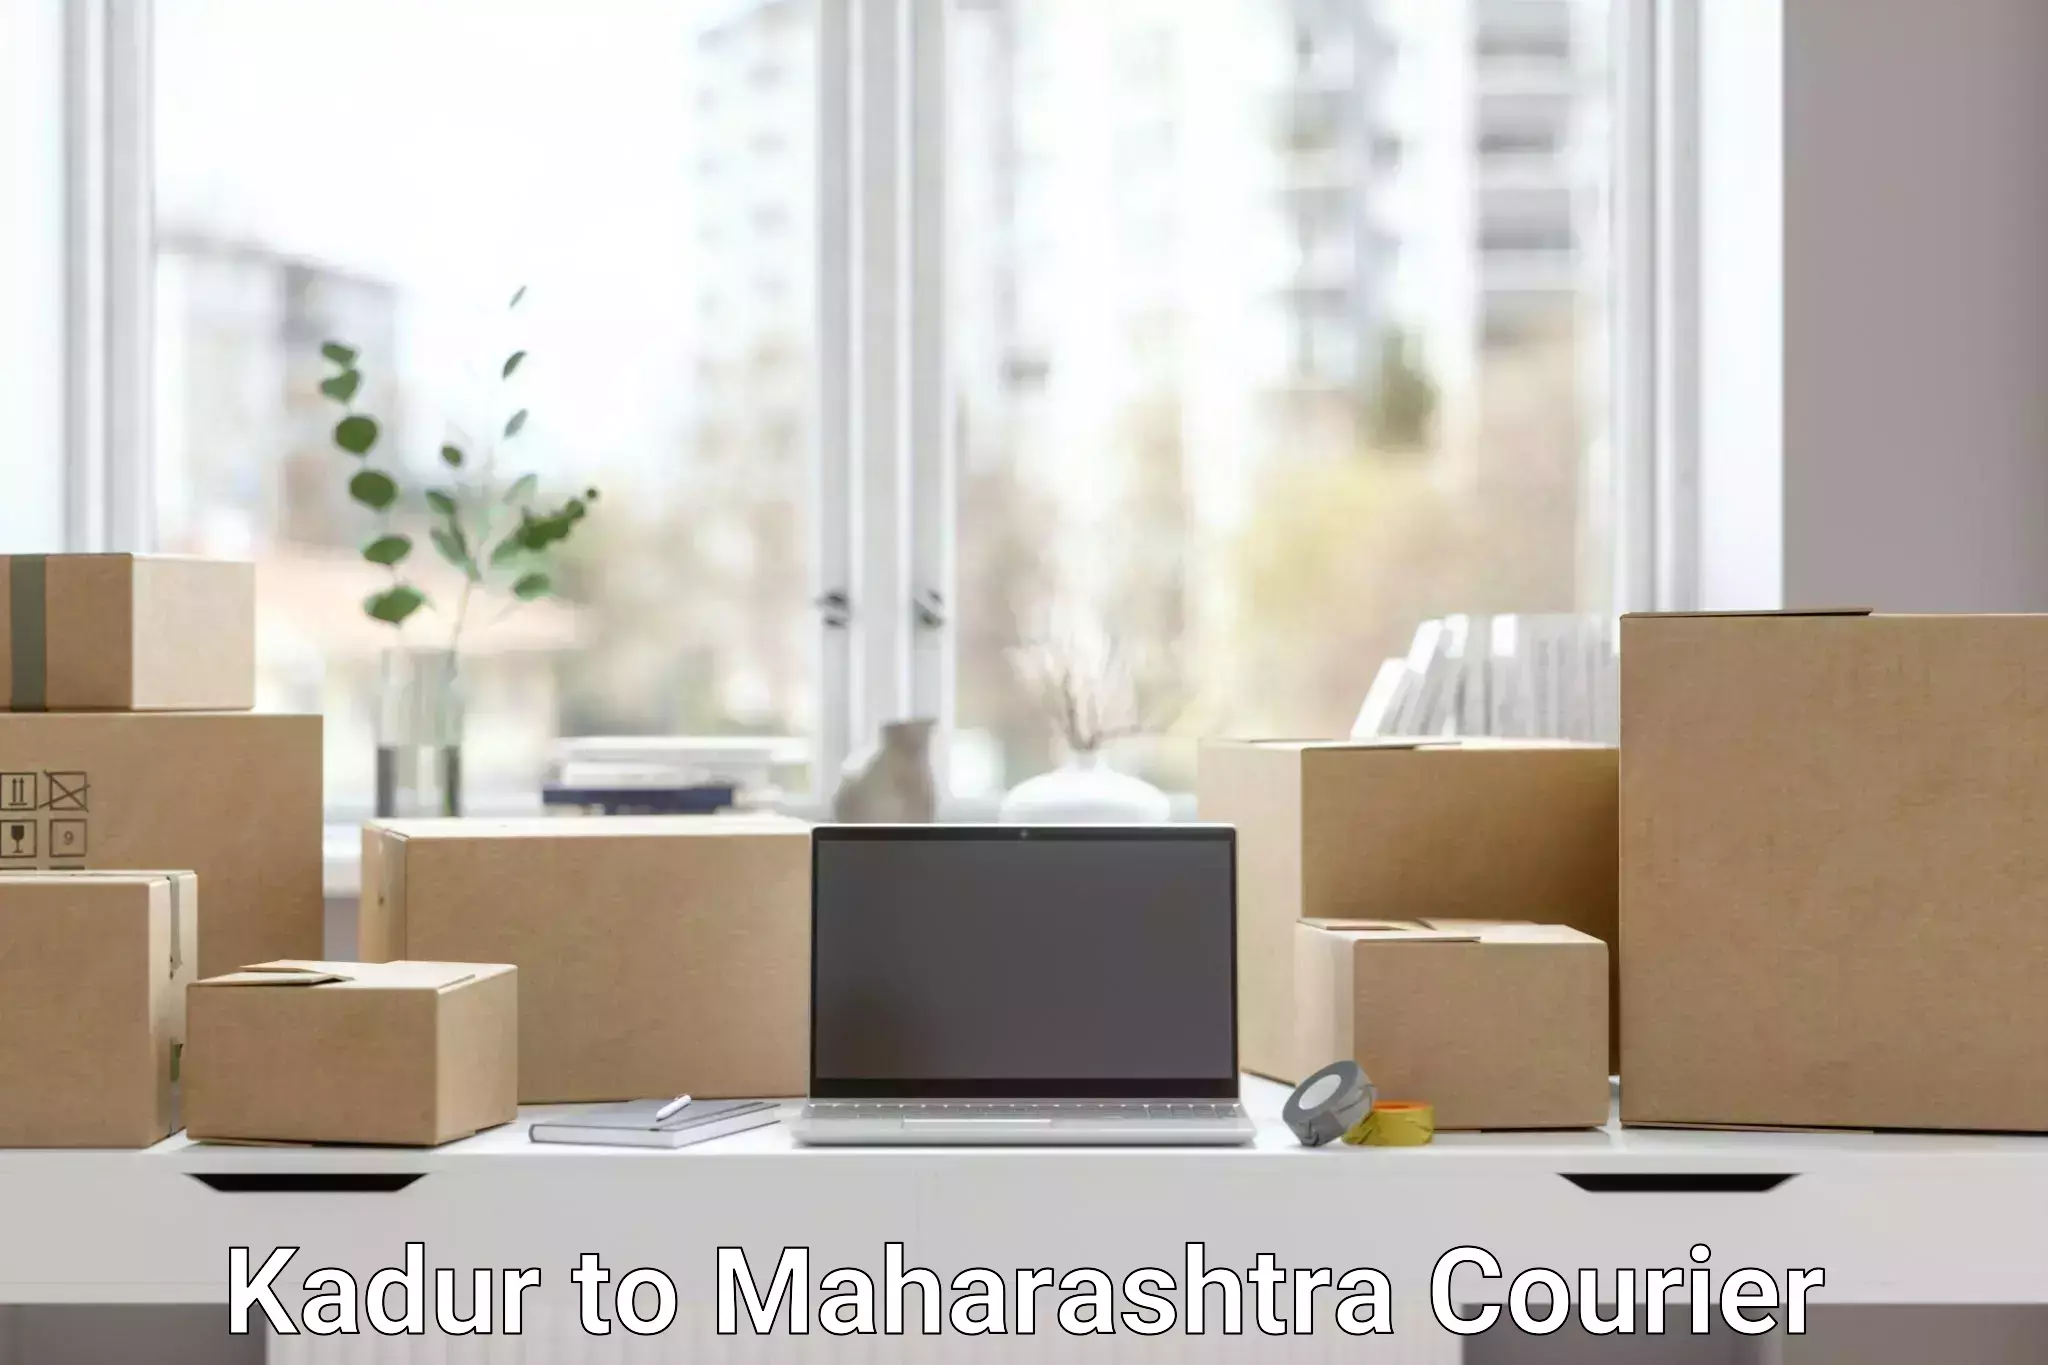 Affordable parcel service Kadur to Mumbai